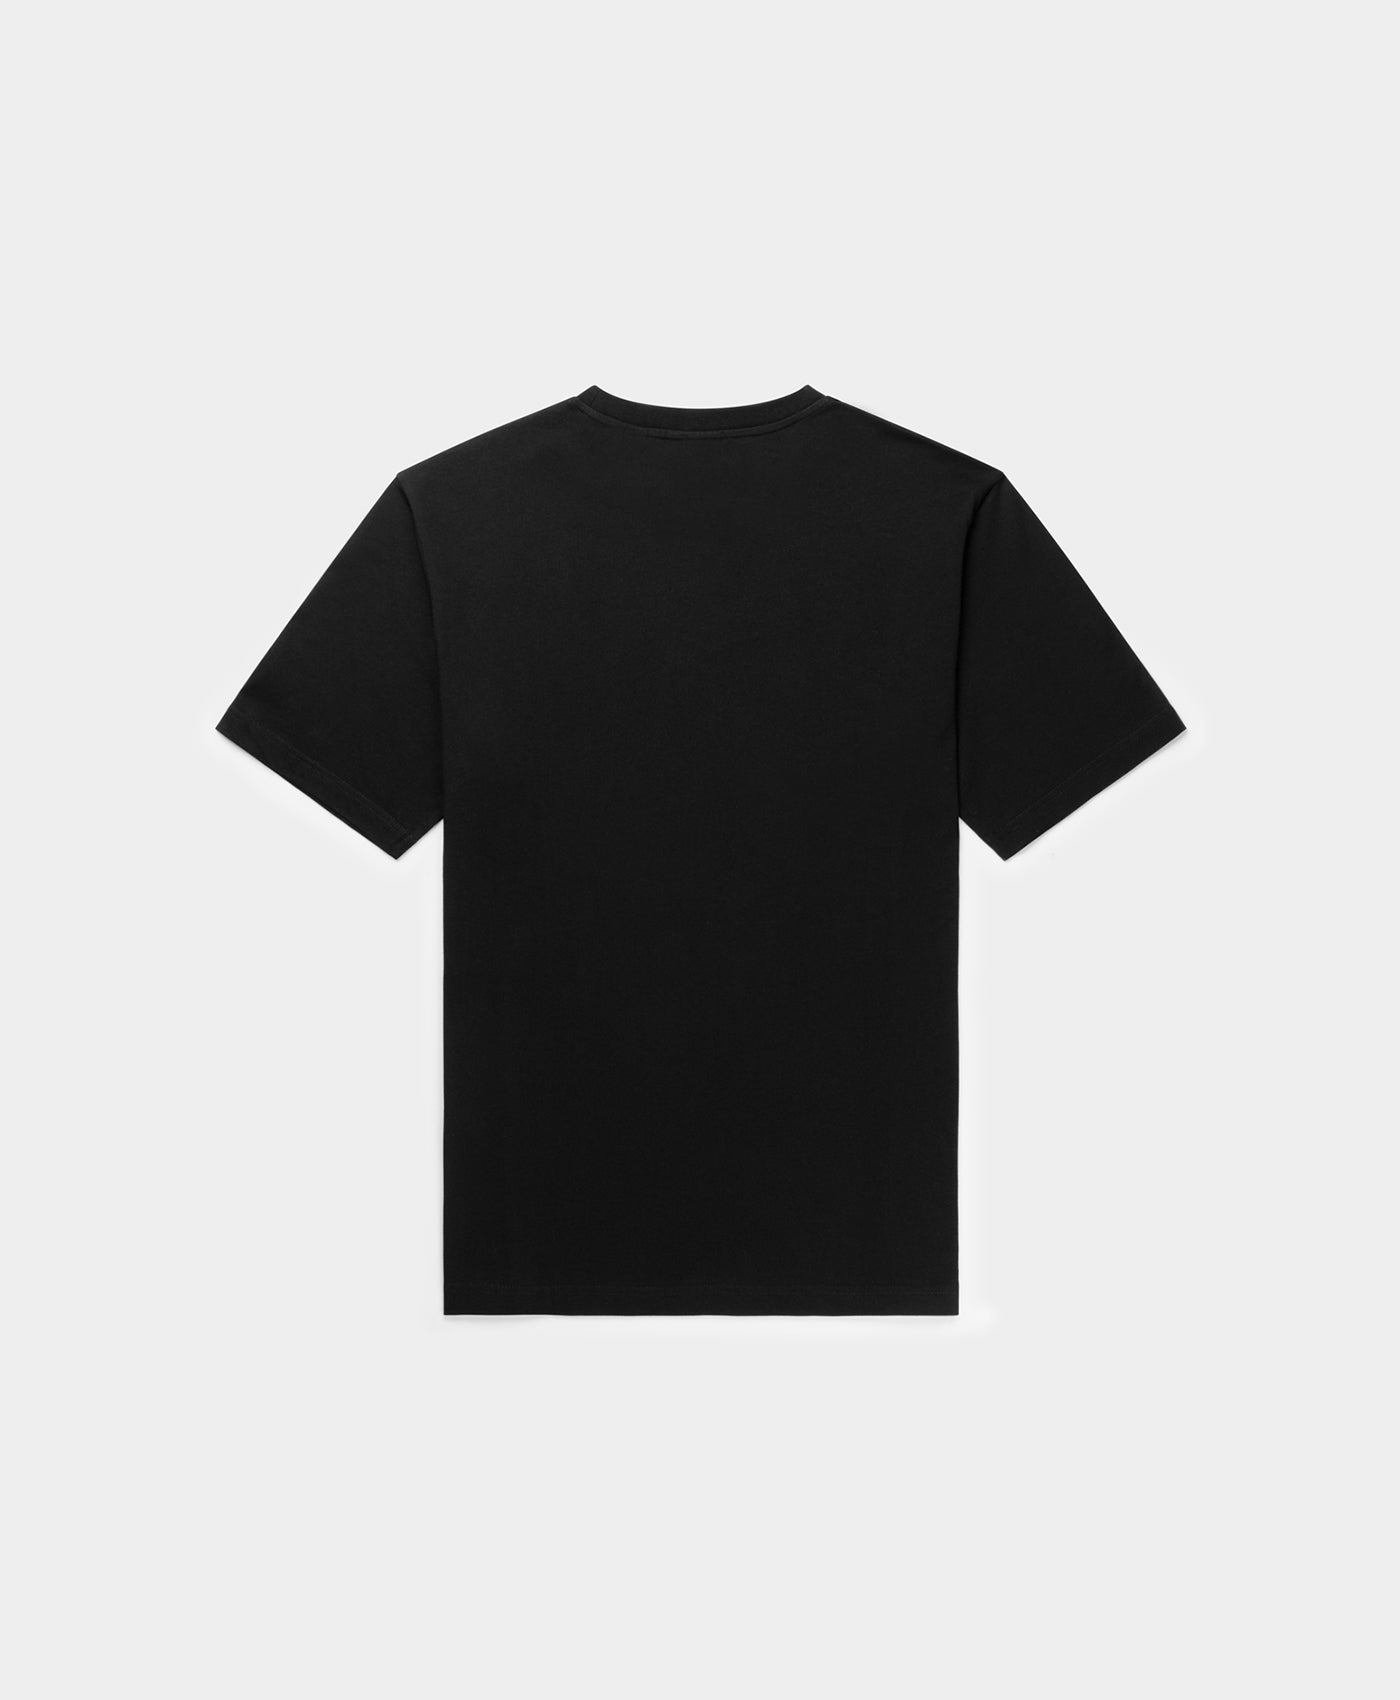 DP - Black Pardali T-Shirt - Packshot - Rear